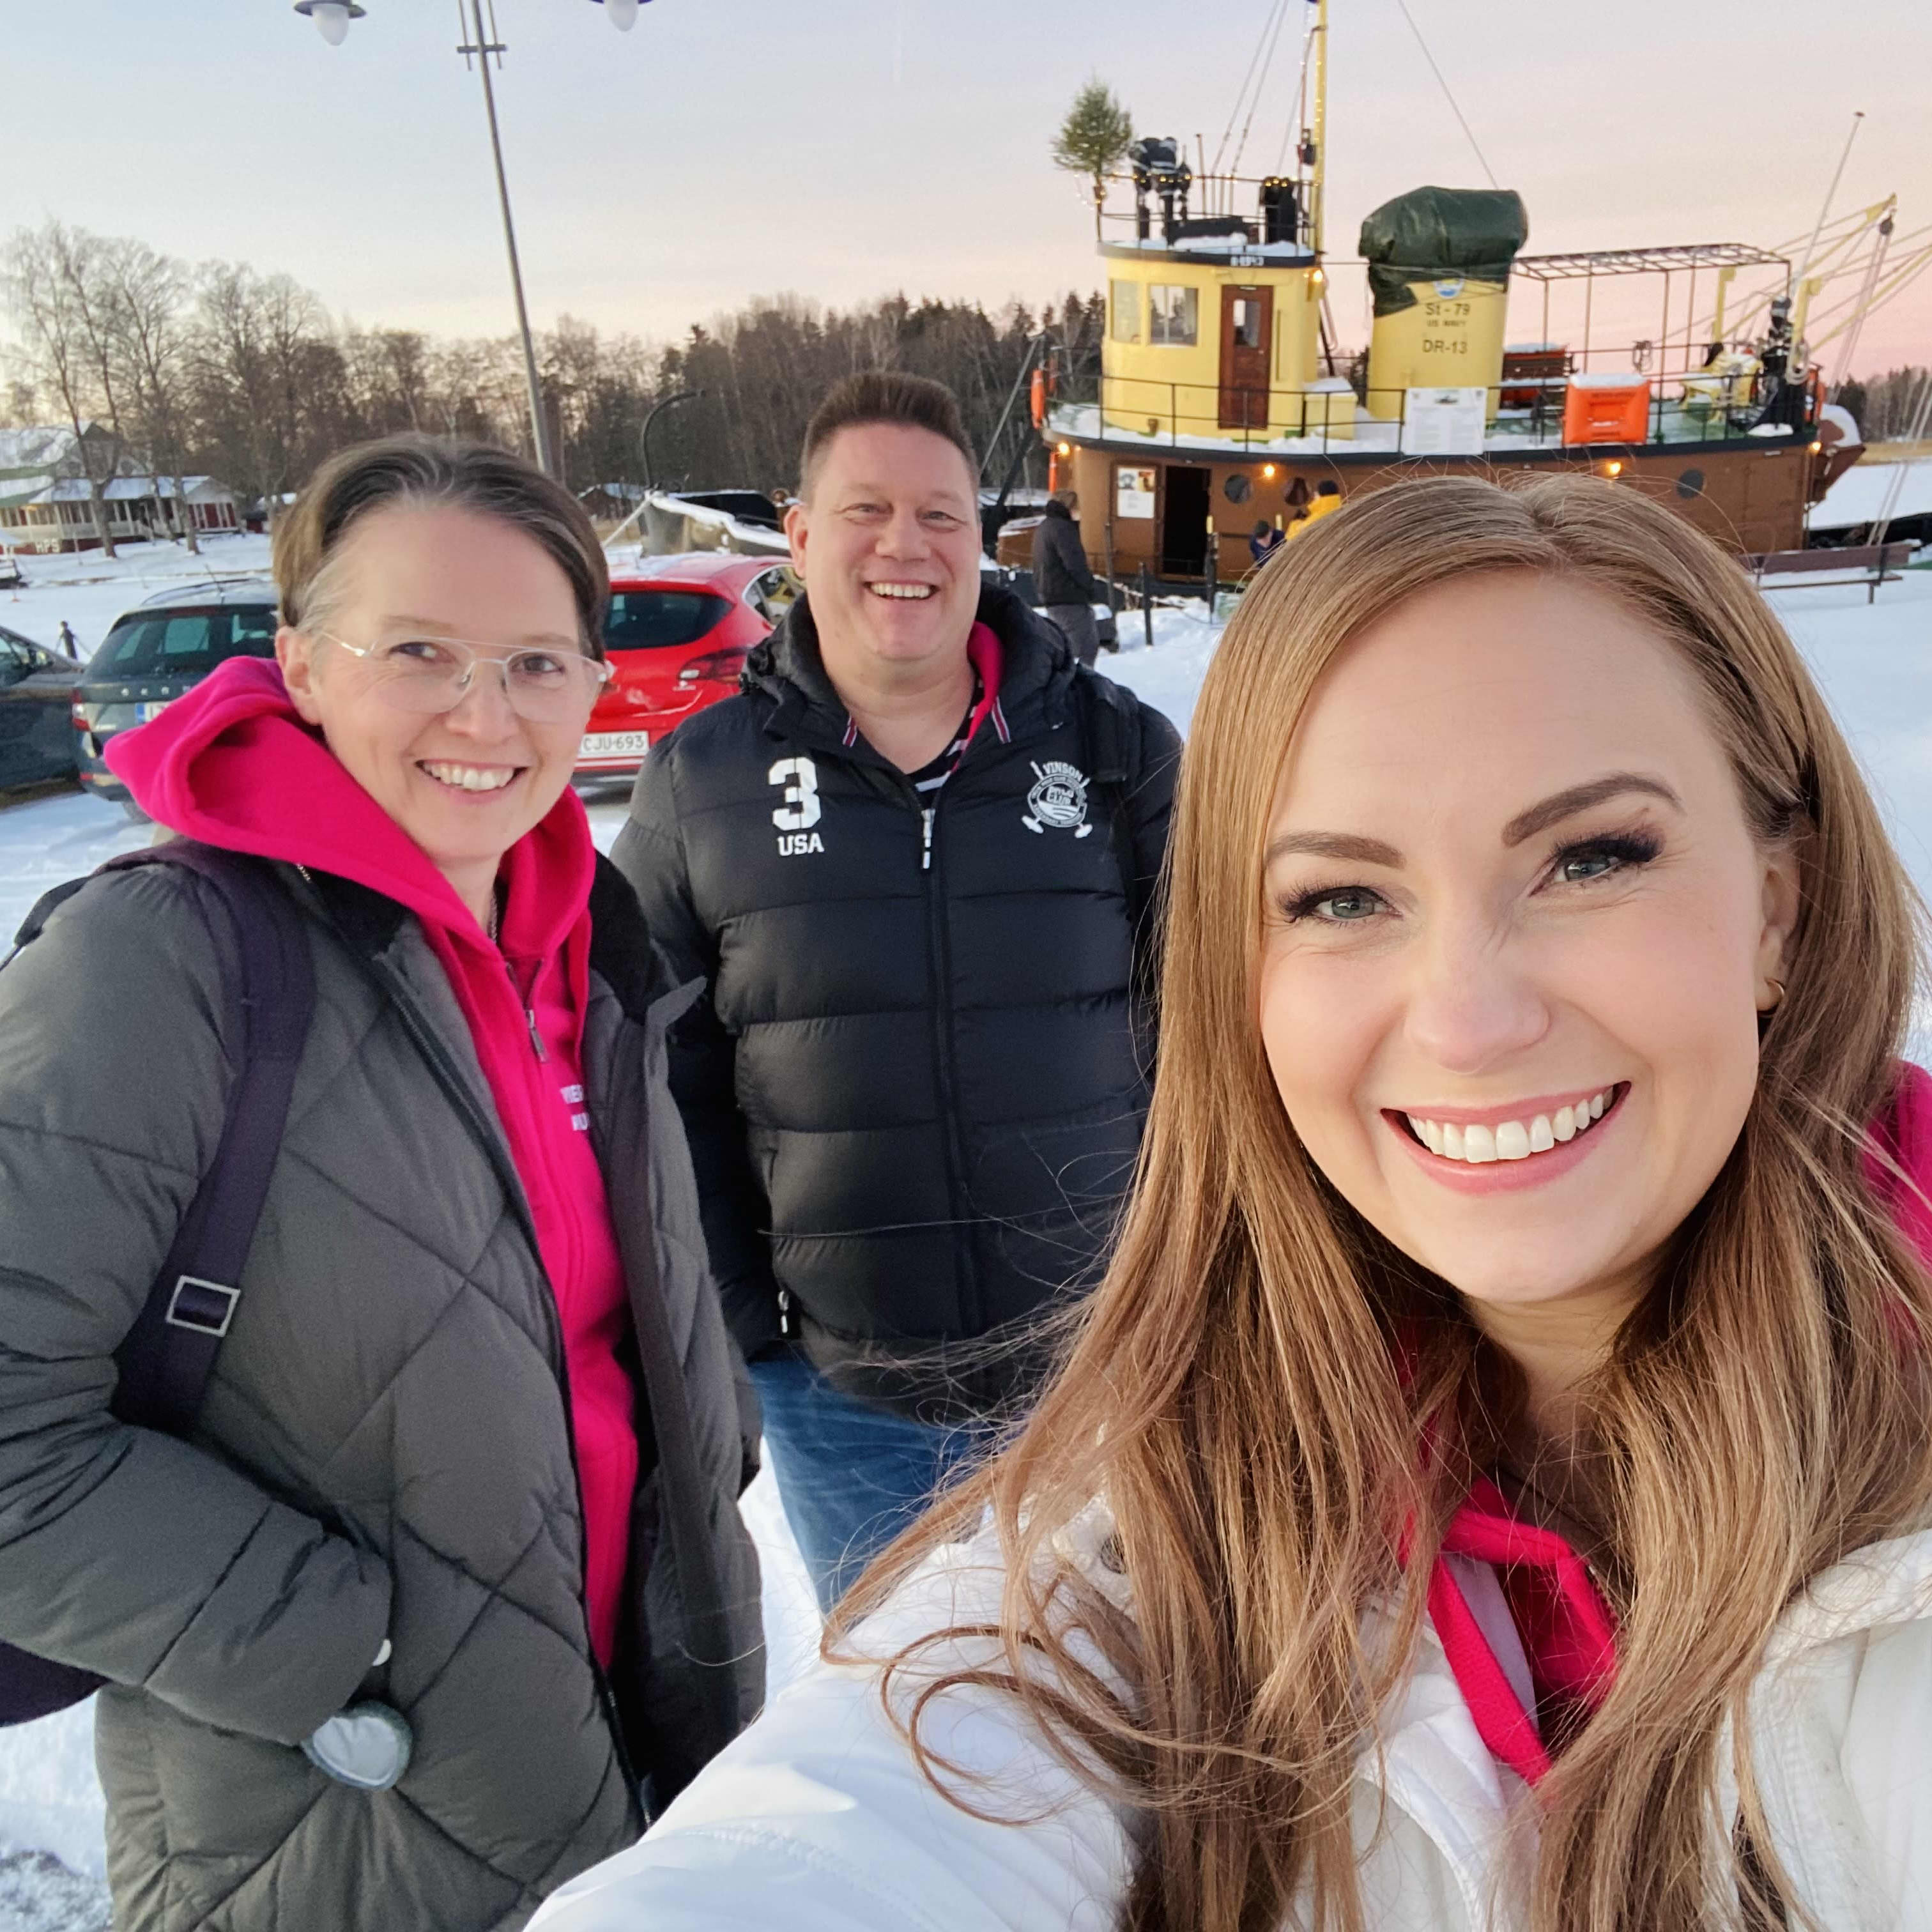 Kolme hymyilevää keski-ikäistä henkilöä seisoo lumisessa satamassa, yksi heistä kuvaa selfienä koko ryhmää.